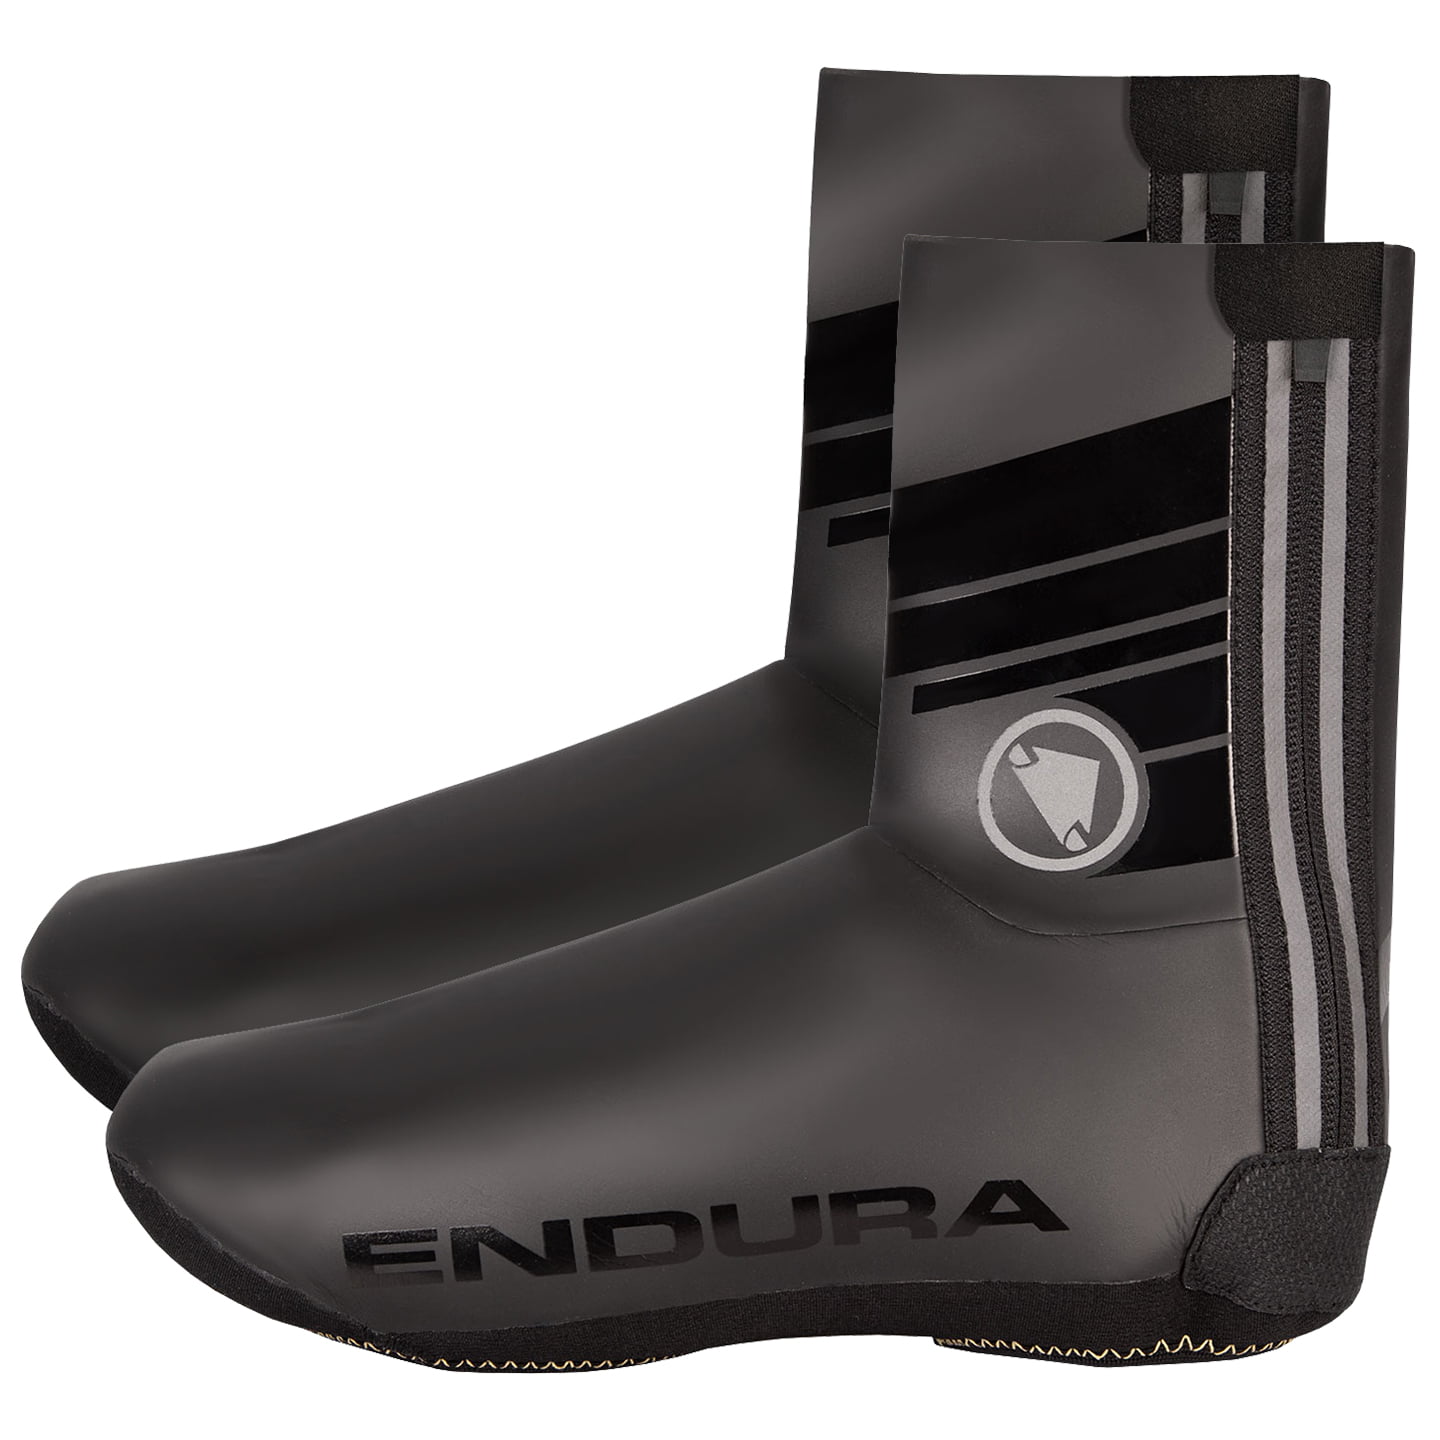 ENDURA Road Bike Rain Shoe Covers Thermal Shoe Covers, Unisex (women / men), size L, Cycling clothing